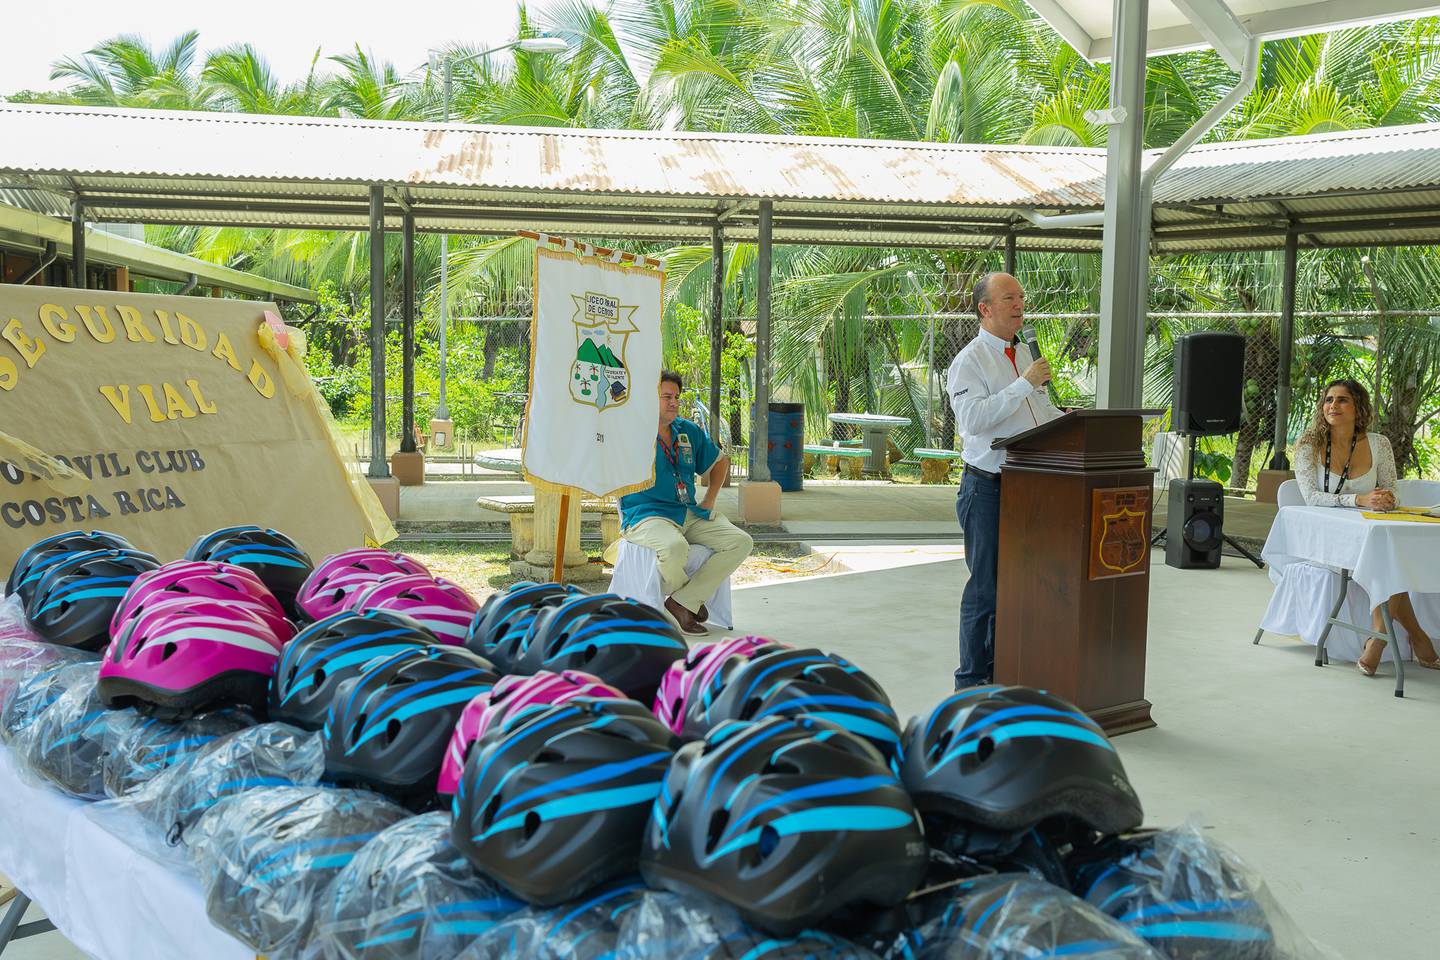 El Automóvil Club de Costa Rica (ACCR) hizo una donación de 50 cascos y rodilleras buscando bajar las consecuencias si sufren un accidente en la calle y para motivarlos a que se transporten a sus aulas en medios de transportes que no contaminan